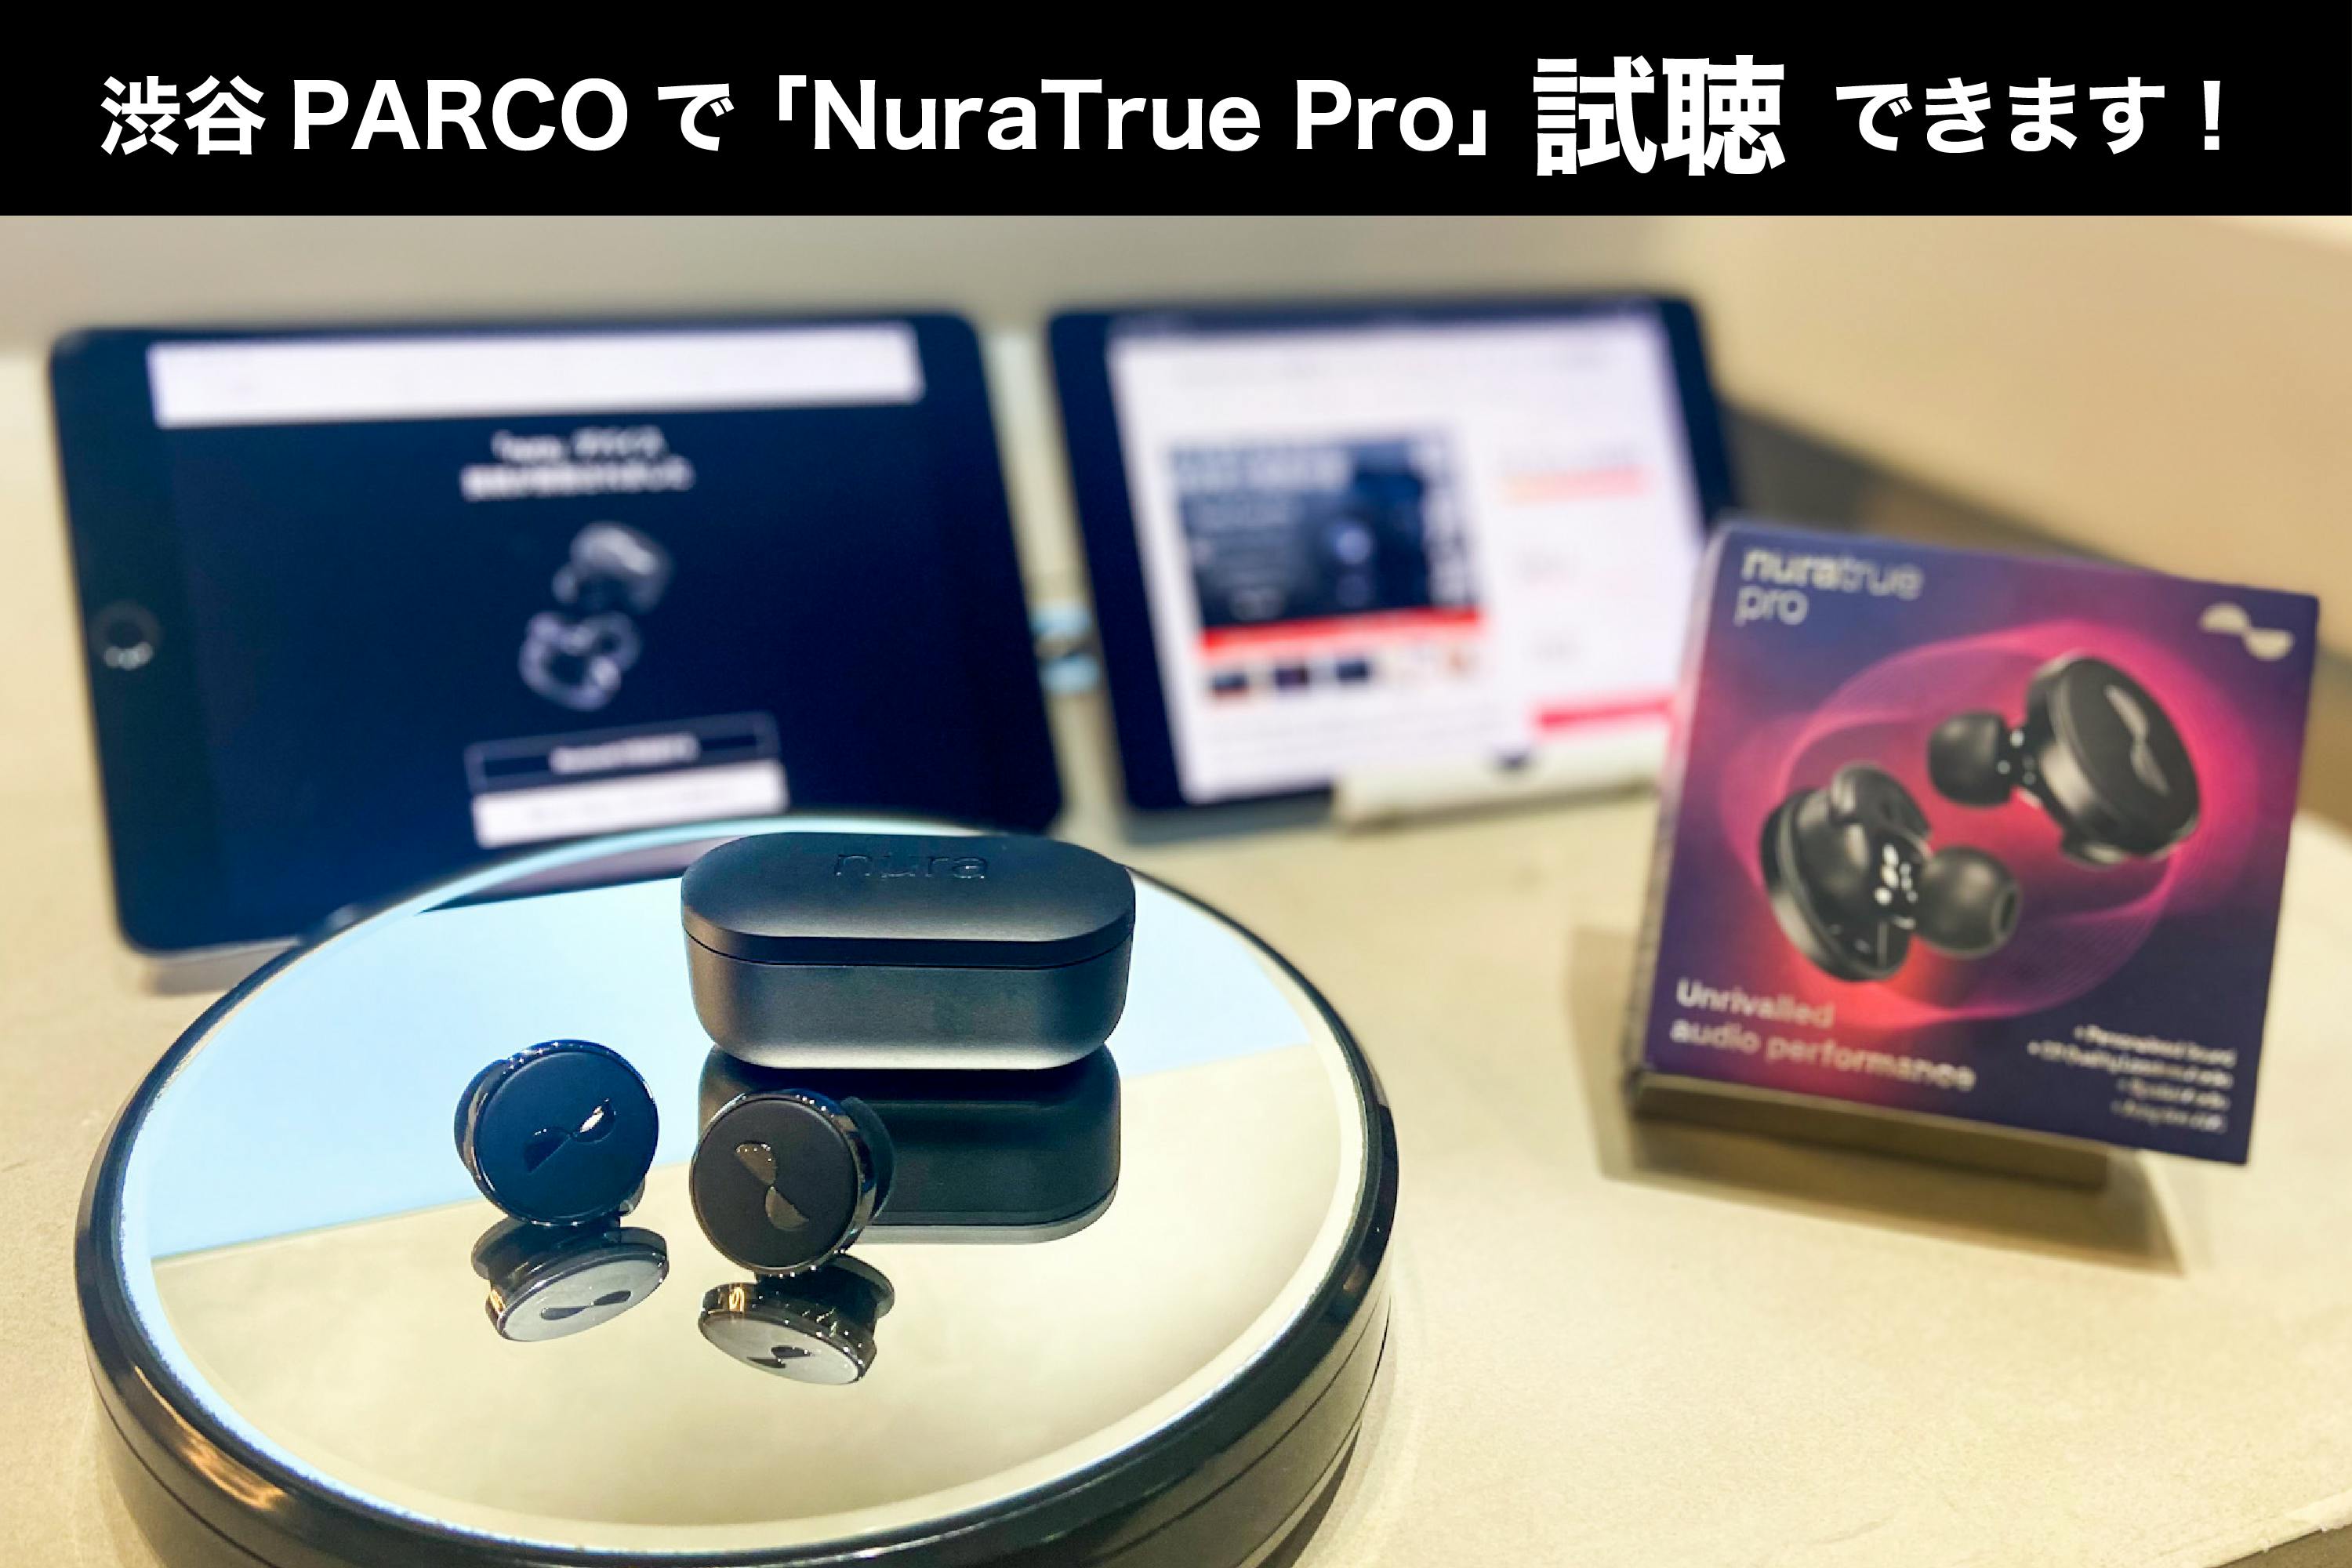 NuraTrue Pro】今週末から、渋谷PARCOで実際にお試しいただけます